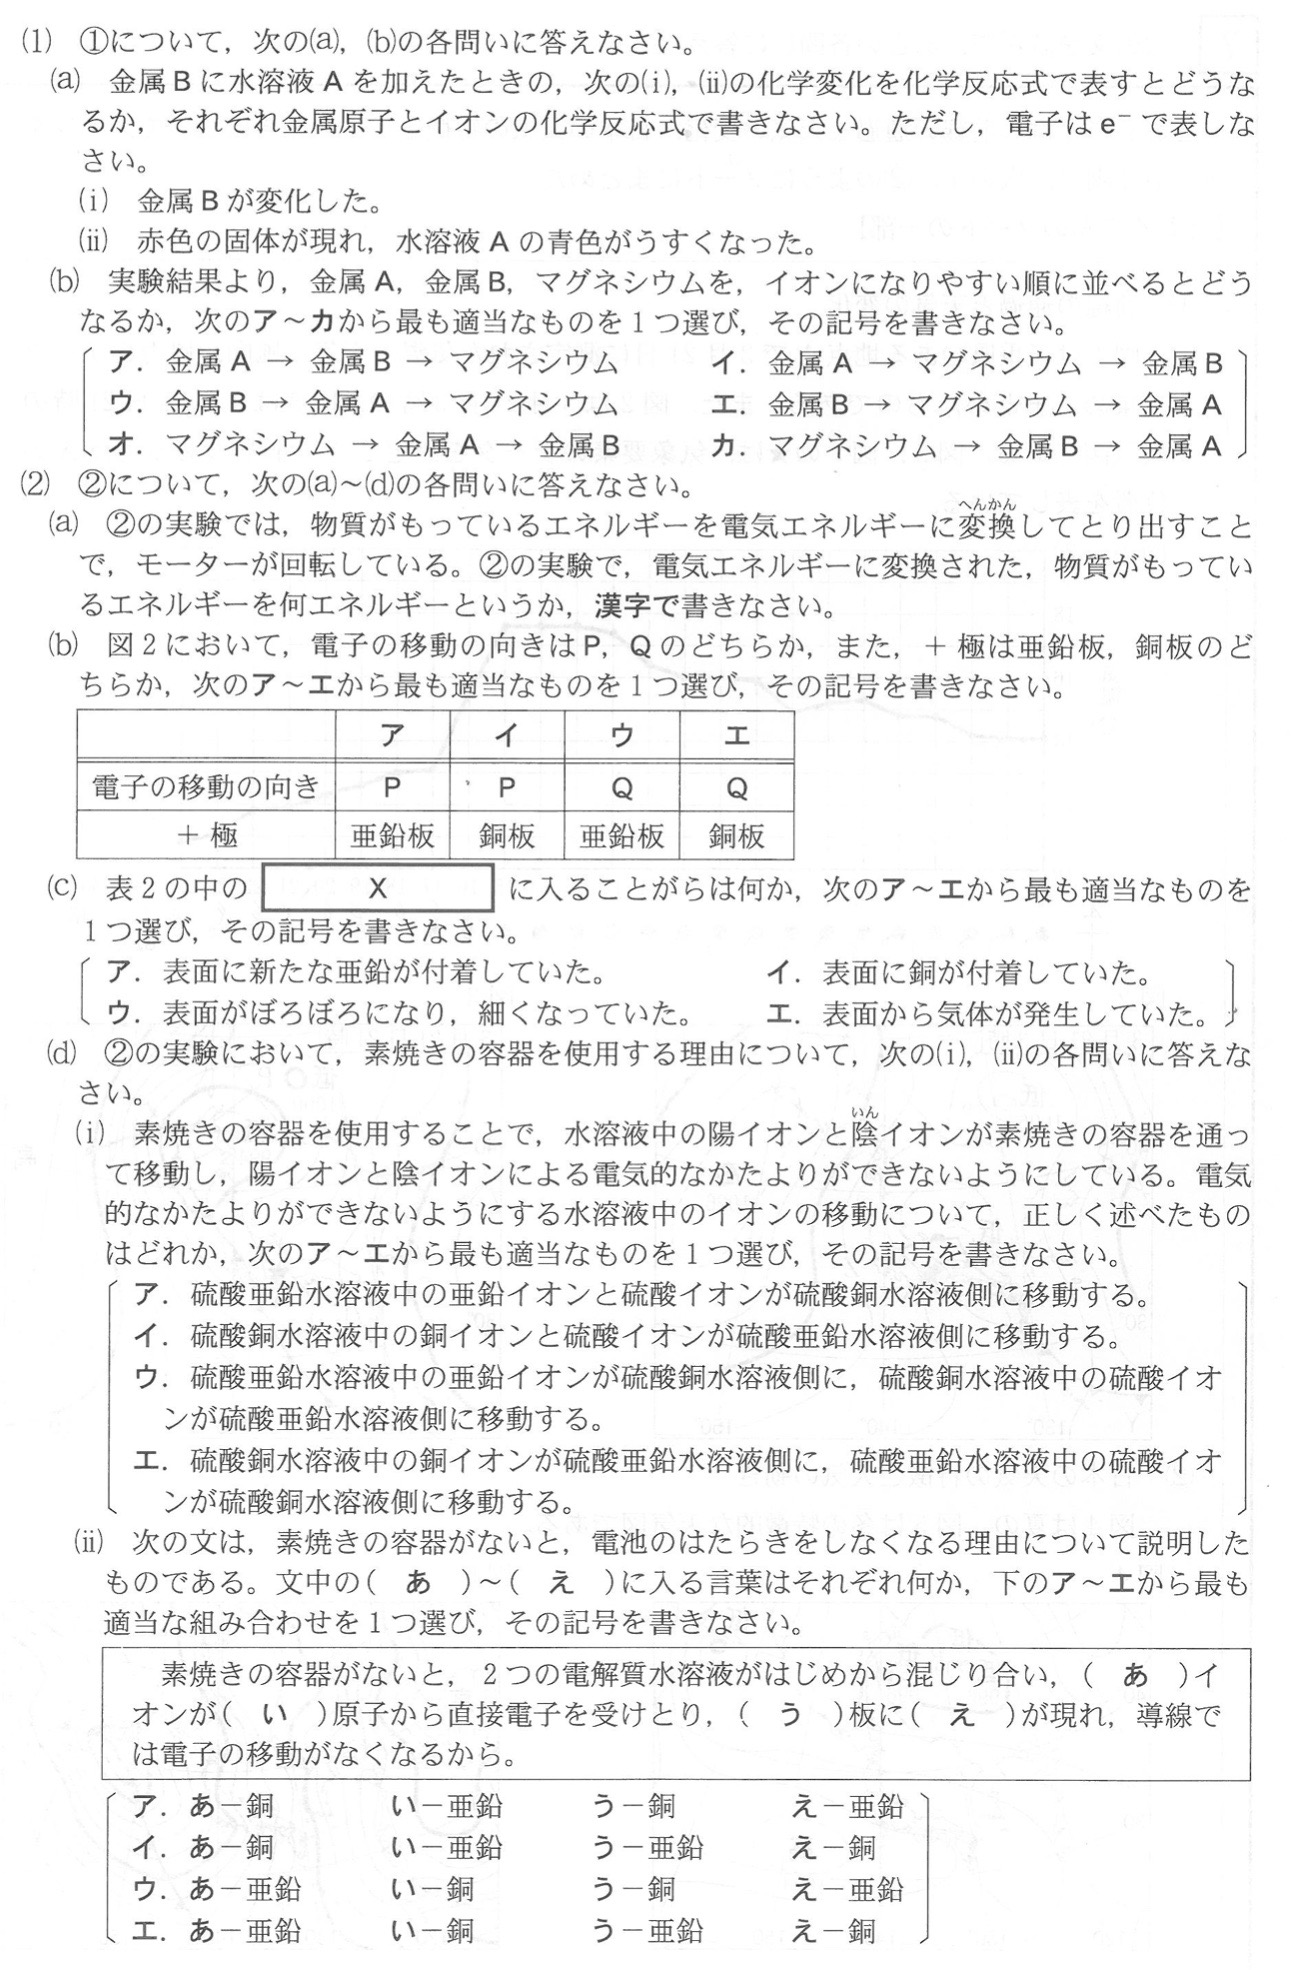 三重県公立高校入試理科2022年(令和4年)過去問題